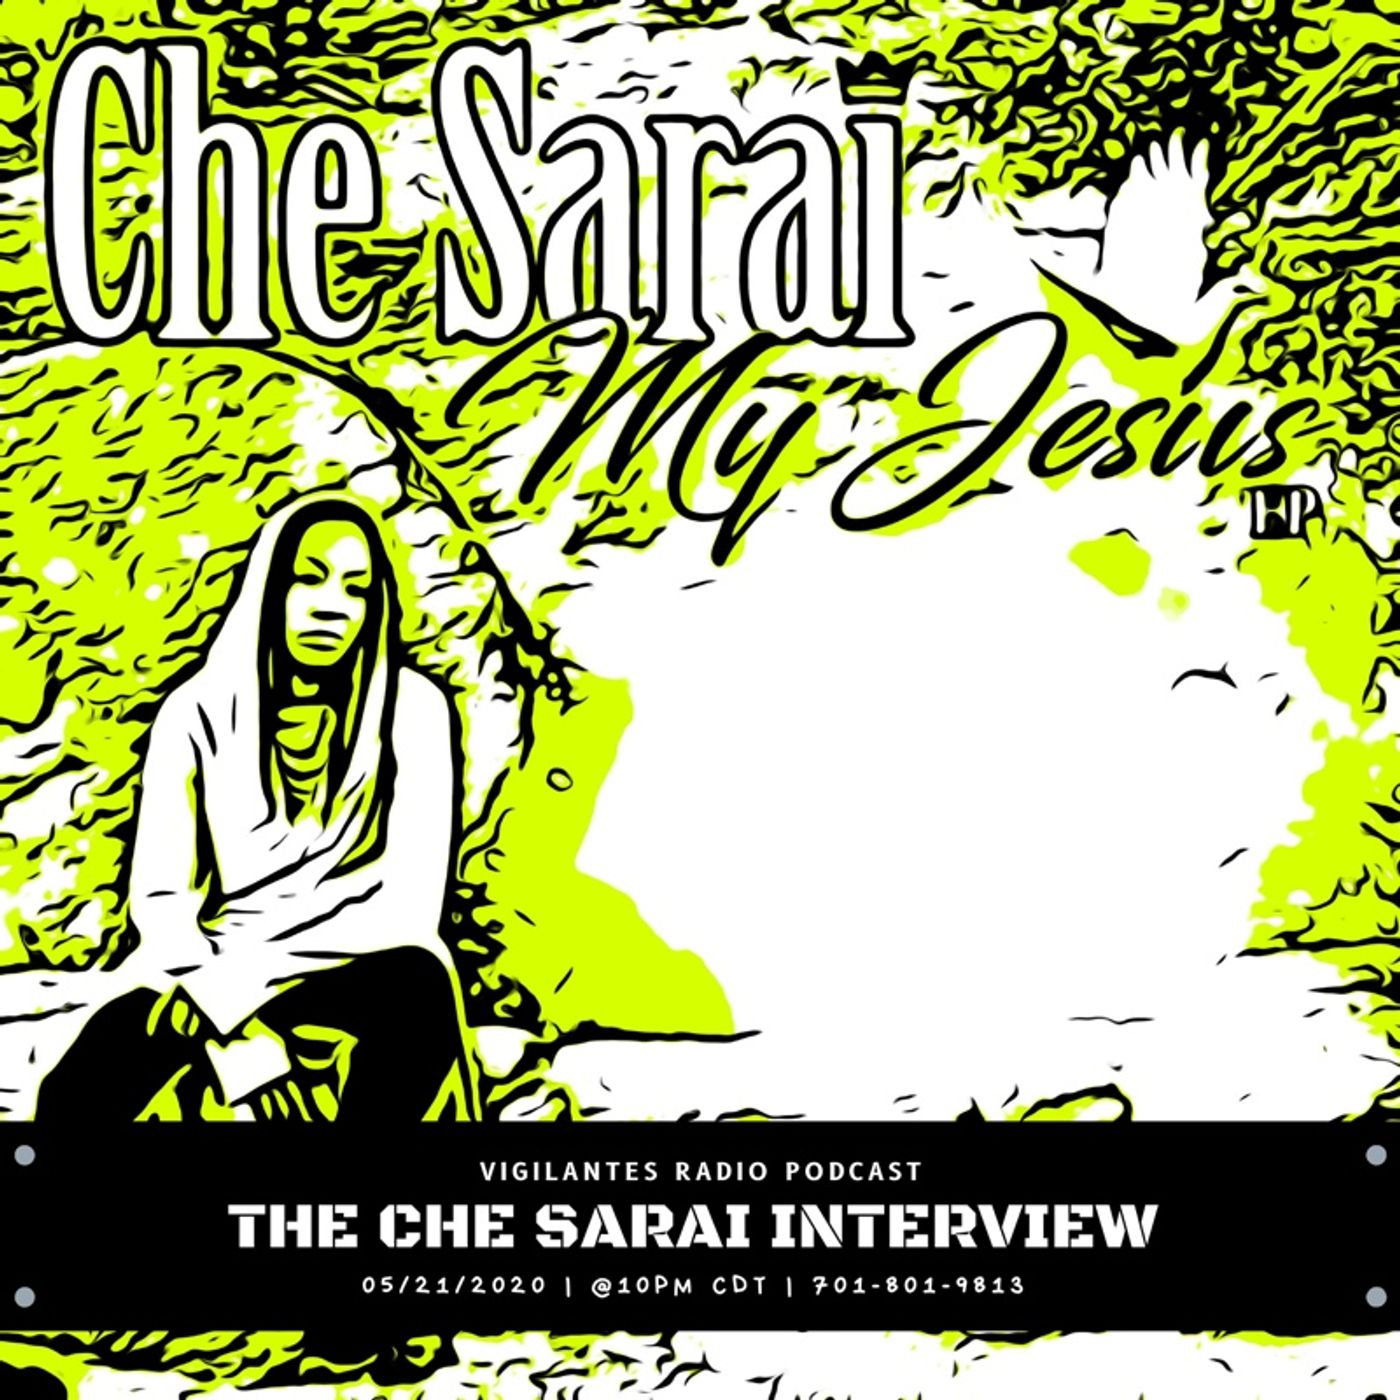 The Che Sarai Interview. Image